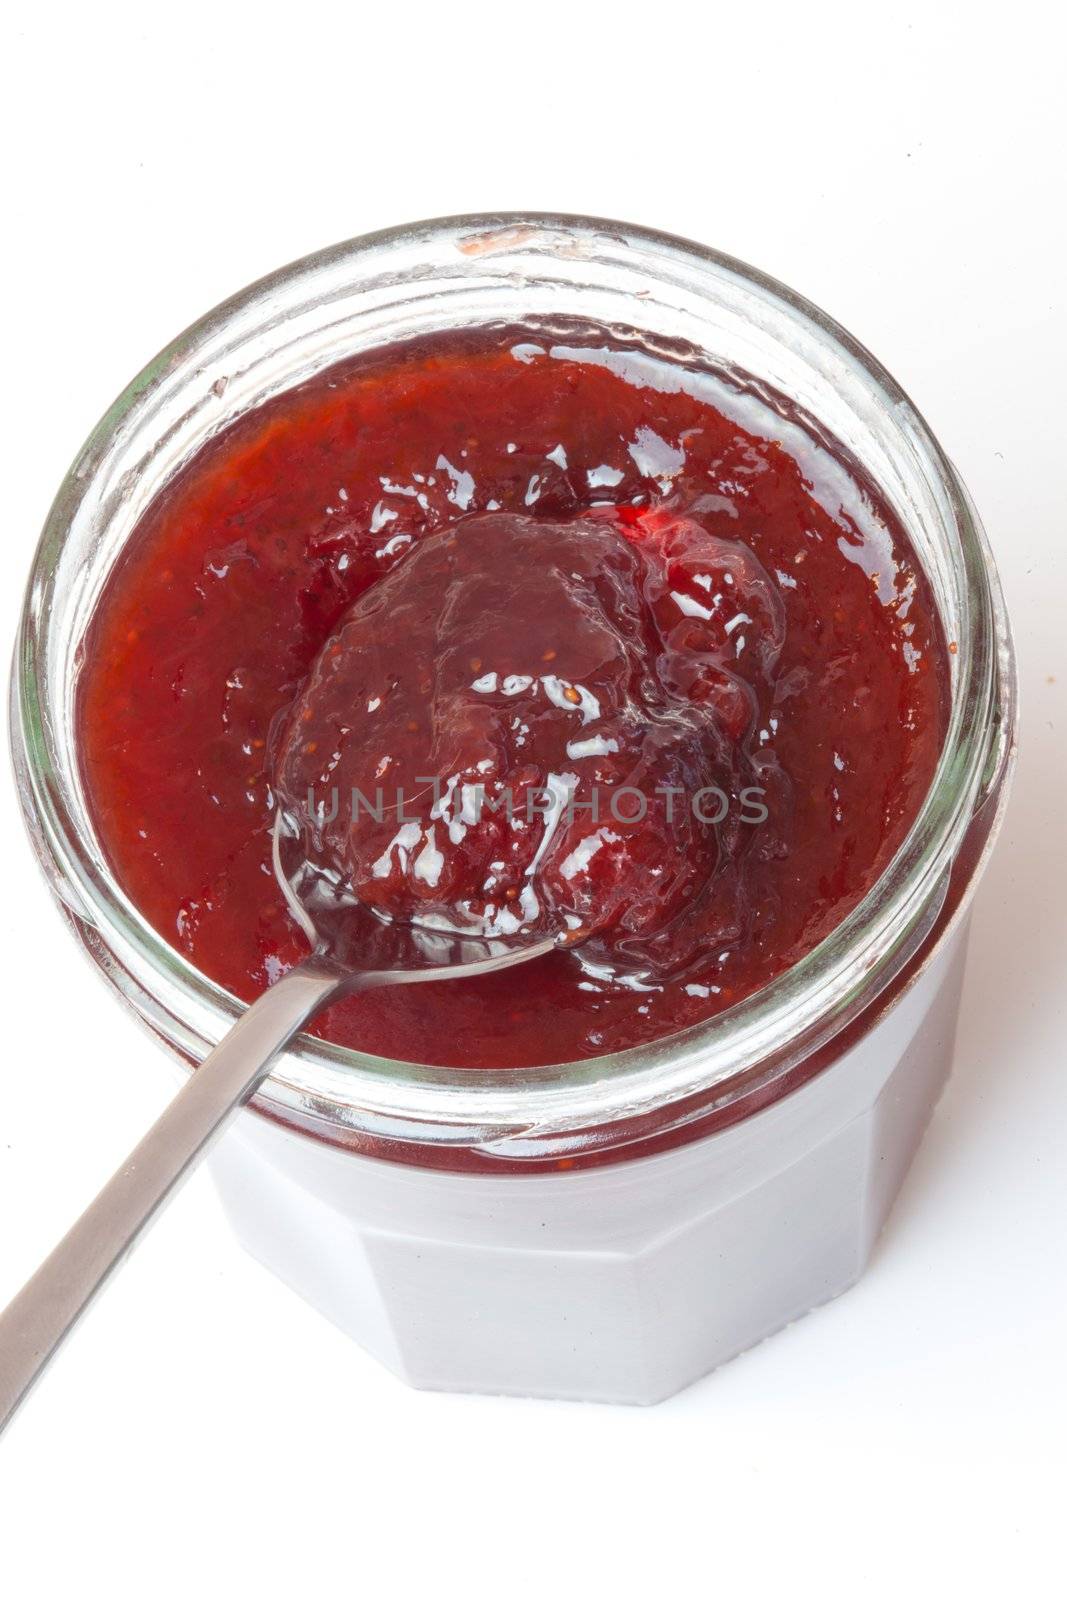 Jar of jam open by Wavebreakmedia